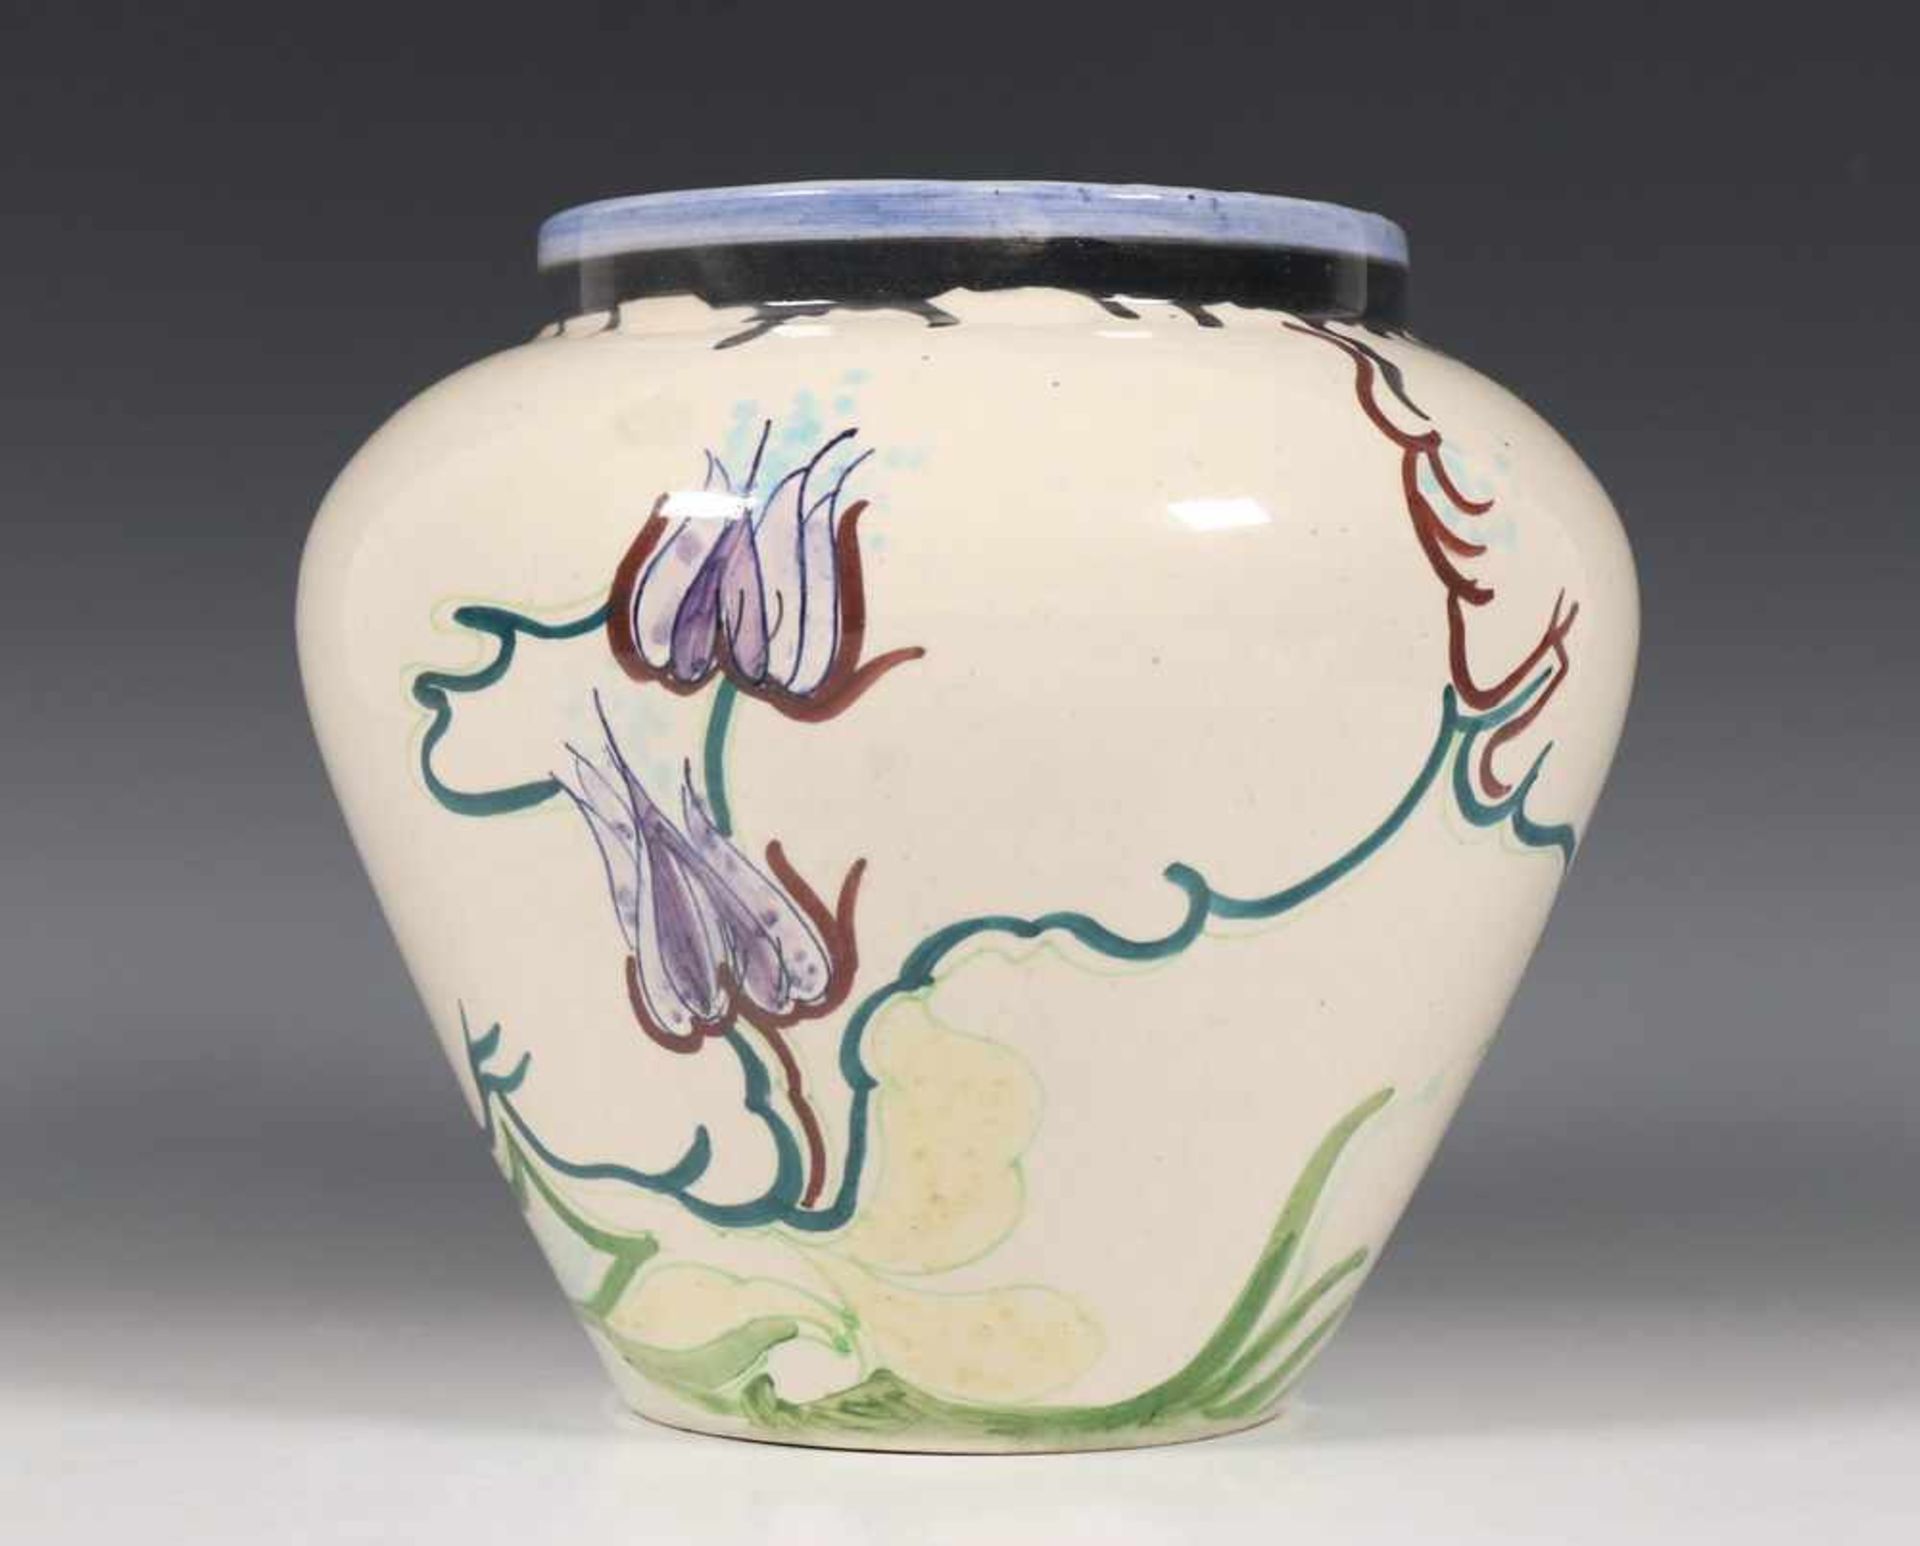 Ontwerp Josef Inwald, geperst glazen vaas, Art Deco,met décor van vissen. Hierbij Gouda, plateel - Bild 3 aus 4